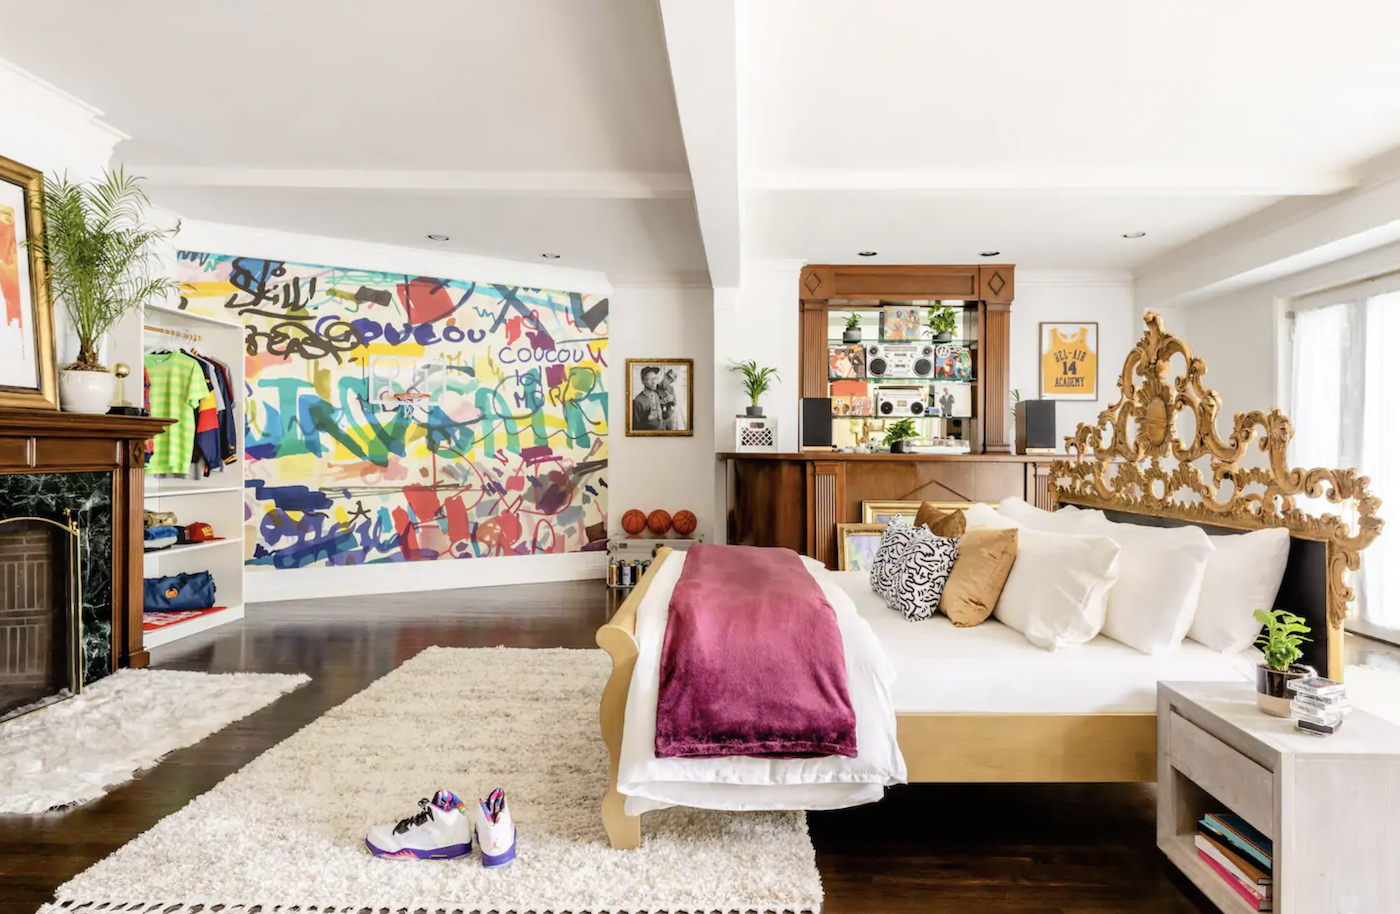 Il est désormais possible de louer la villa du "Prince de Bel-Air" sur Airbnb